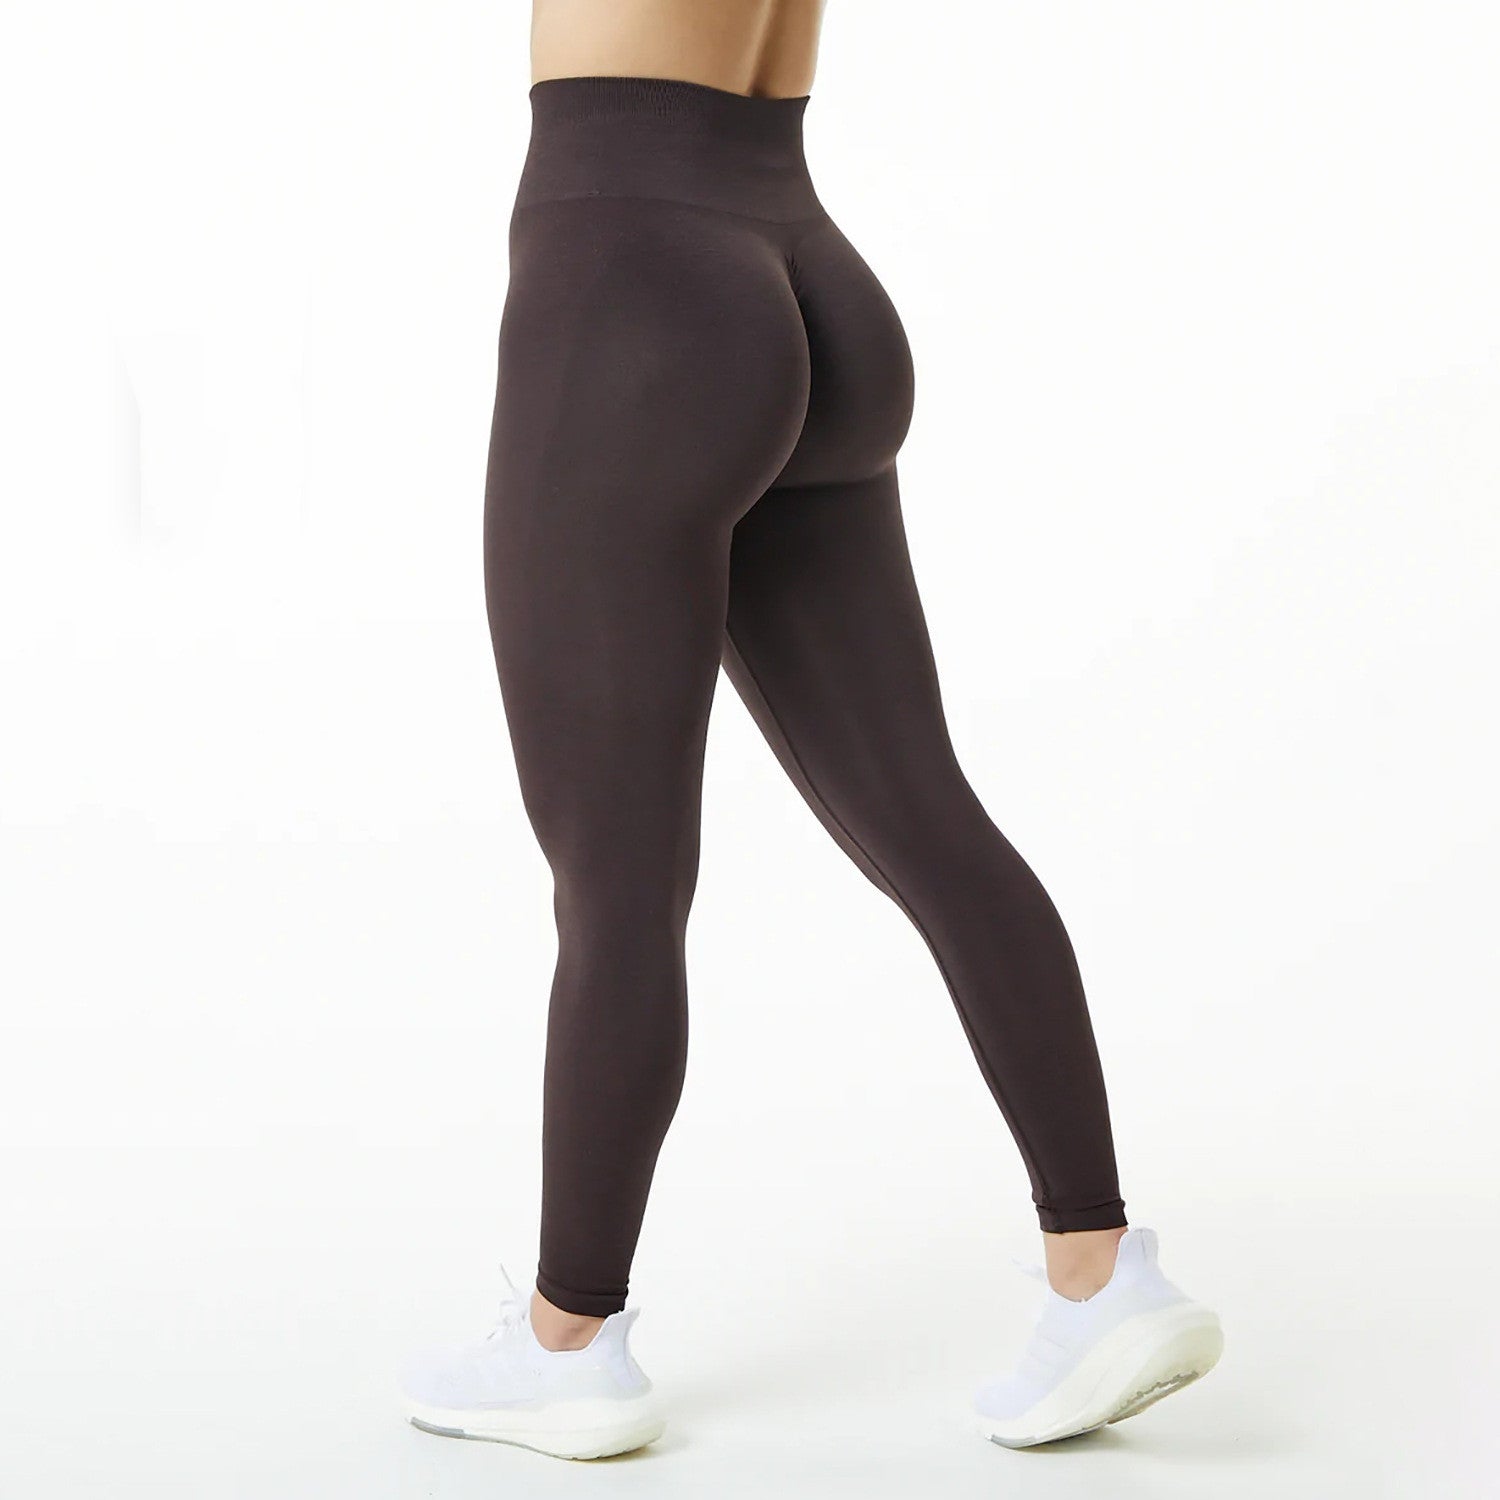 Honey Peach Pants Elastic Yoga Pants - NextthinkShop